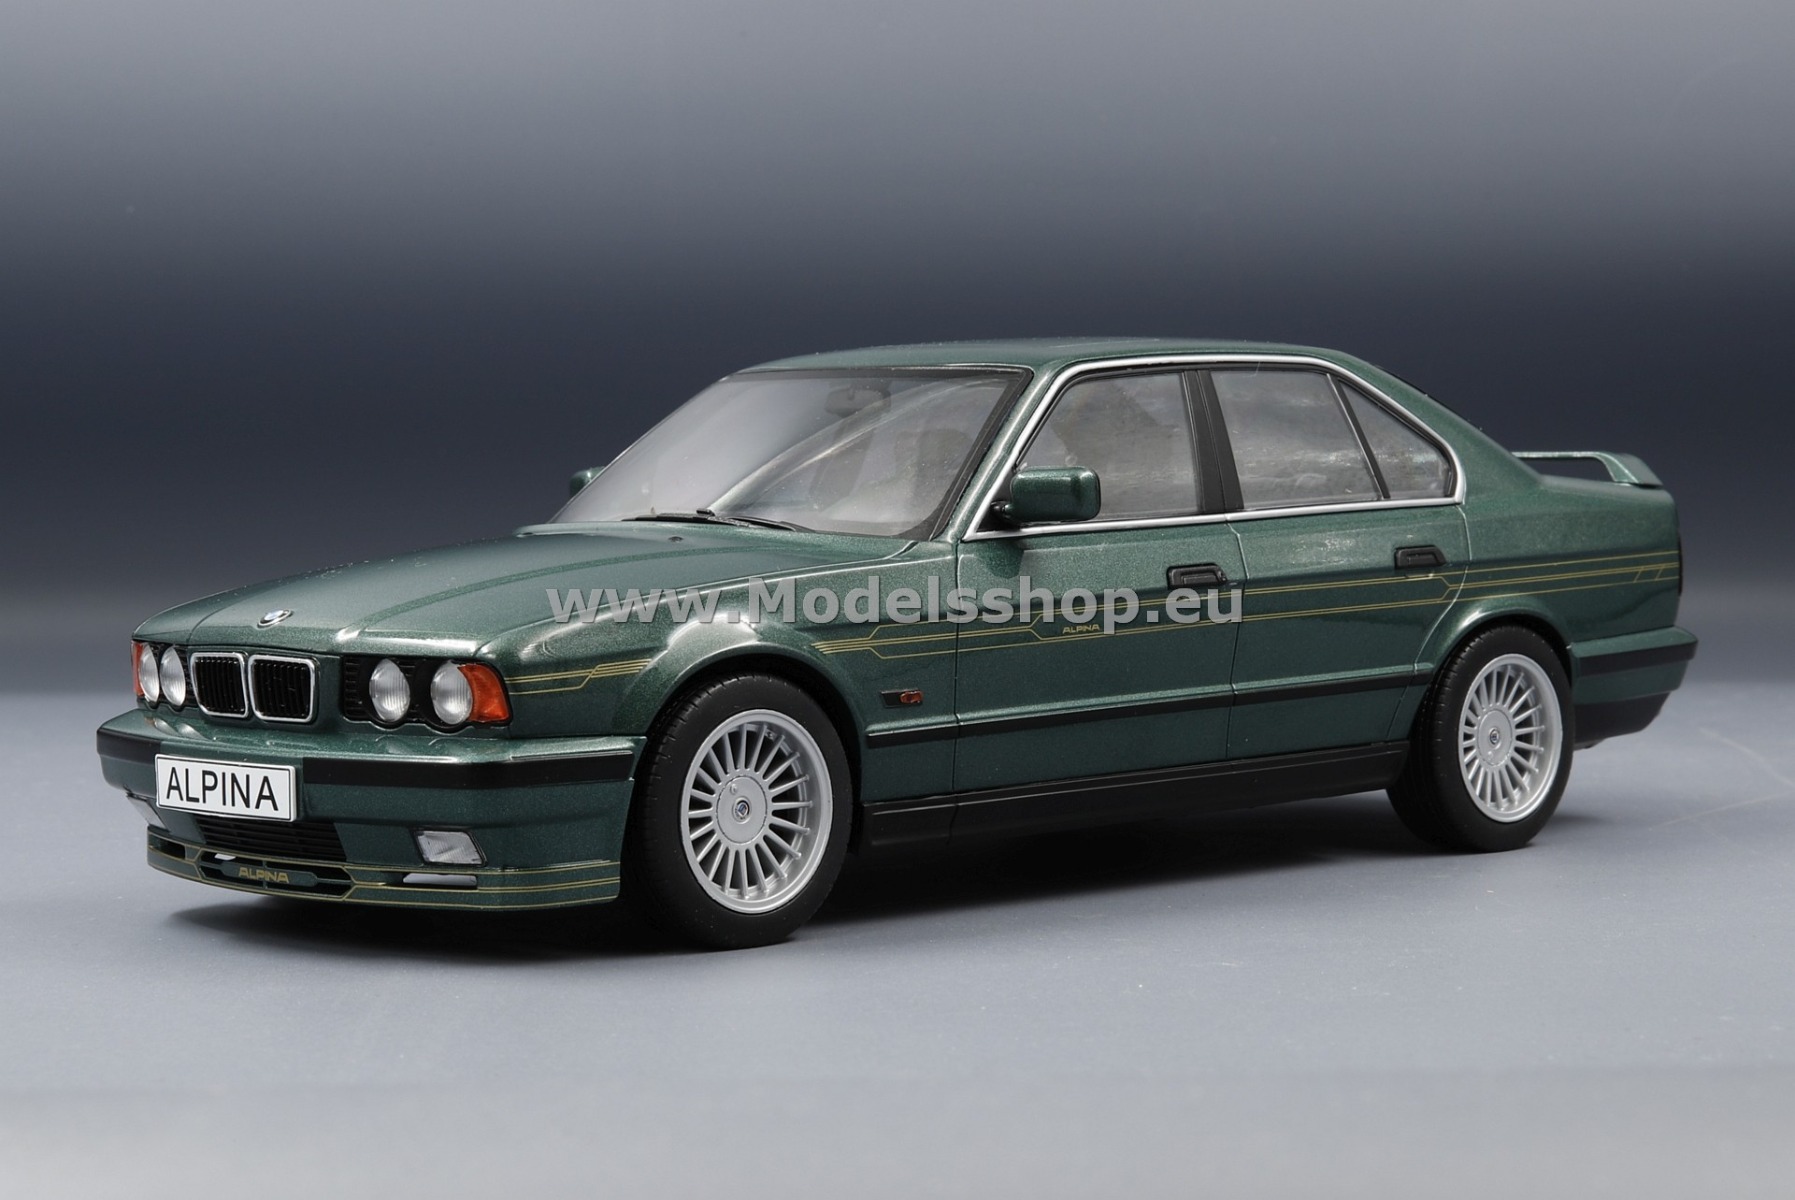 MCG 18229 BMW Alpina B10 4,6, 1994 /green metallic - decorated/